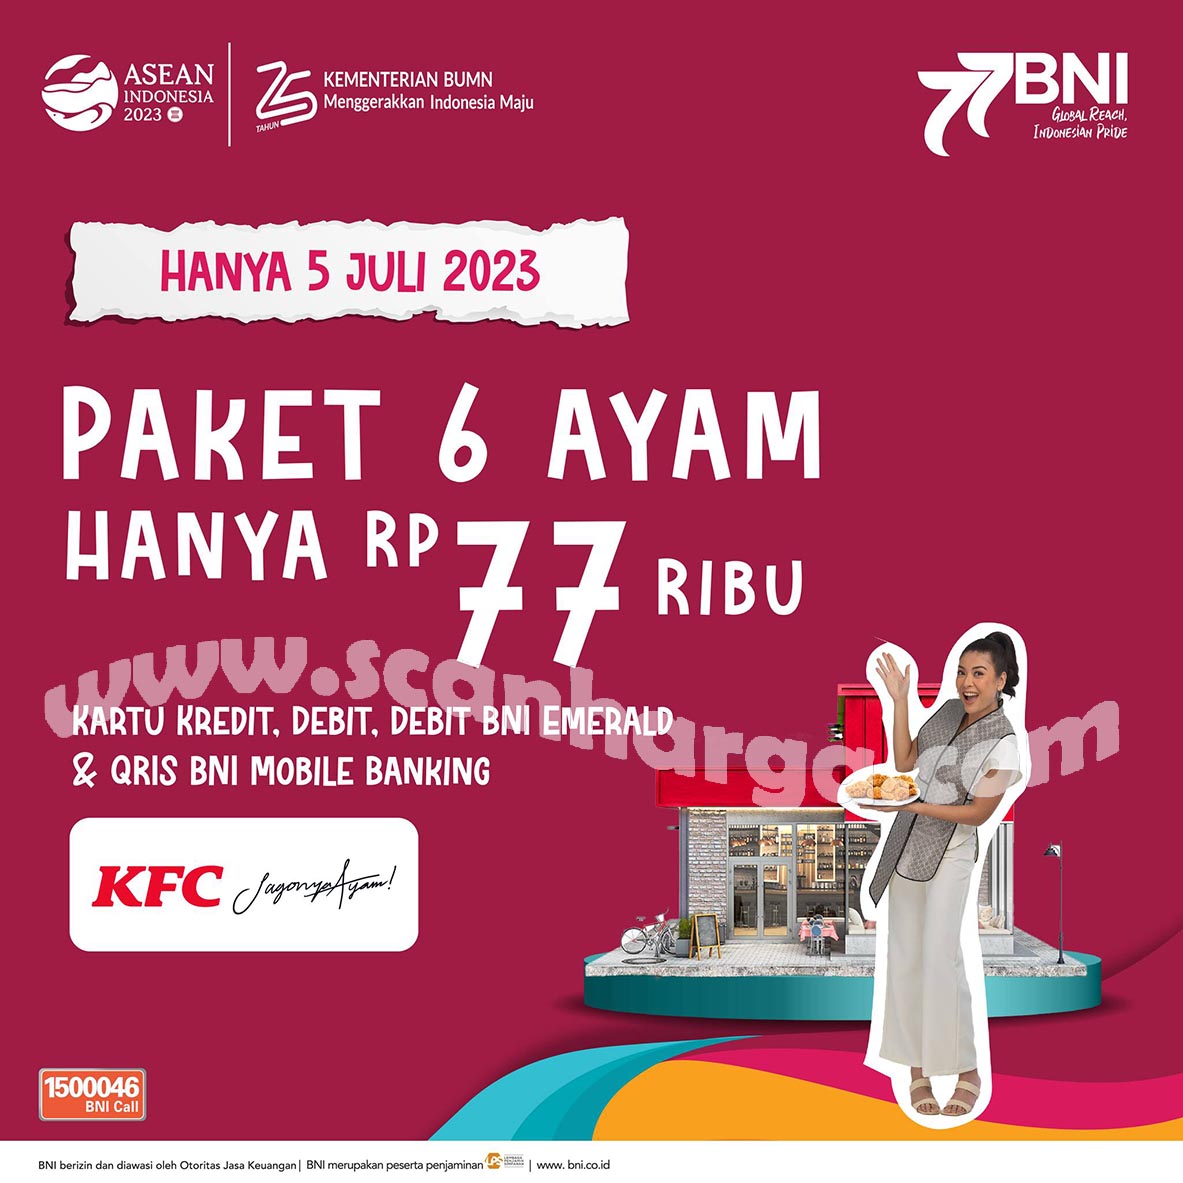 Promo KFC HUT BNI KE 77 – Paket 6 Ayam Hanya Rp. 77Ribu